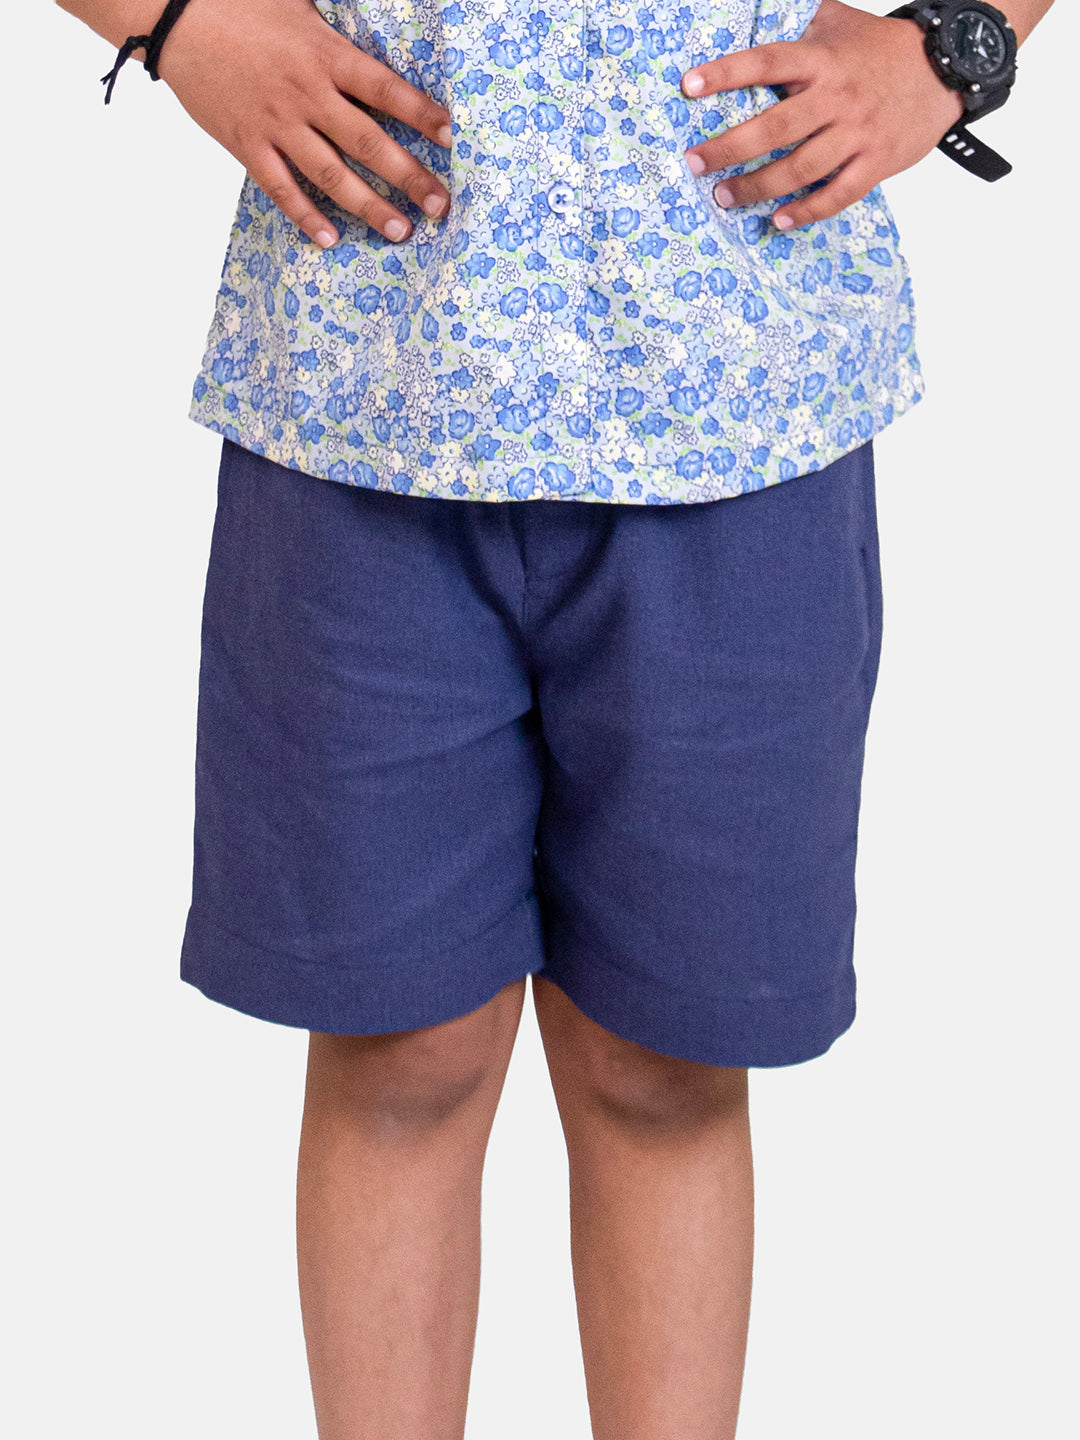 Boys Elastic Navy Blue Linen Shorts